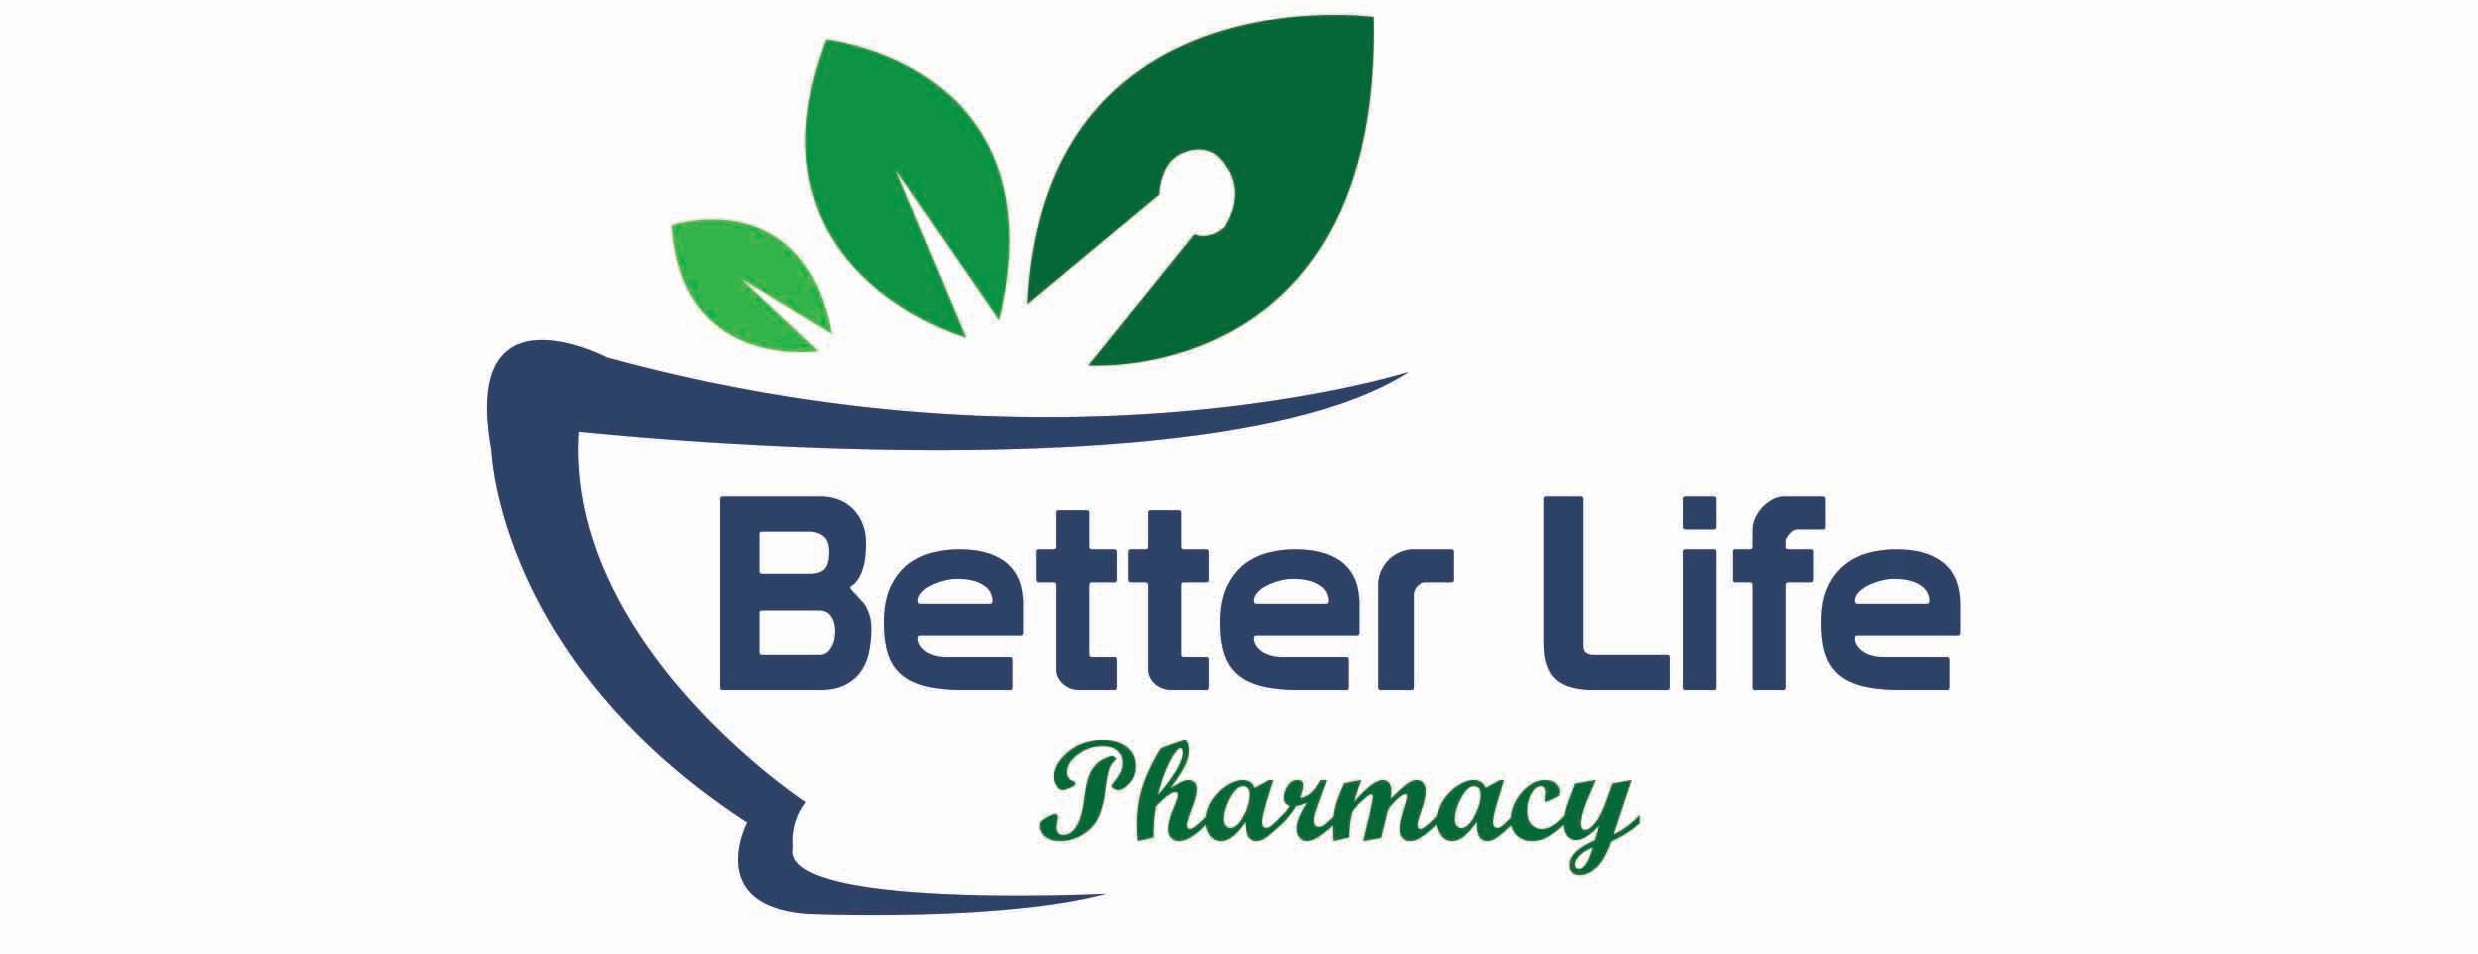 Better Life Pharmacy - Hoboken Logo